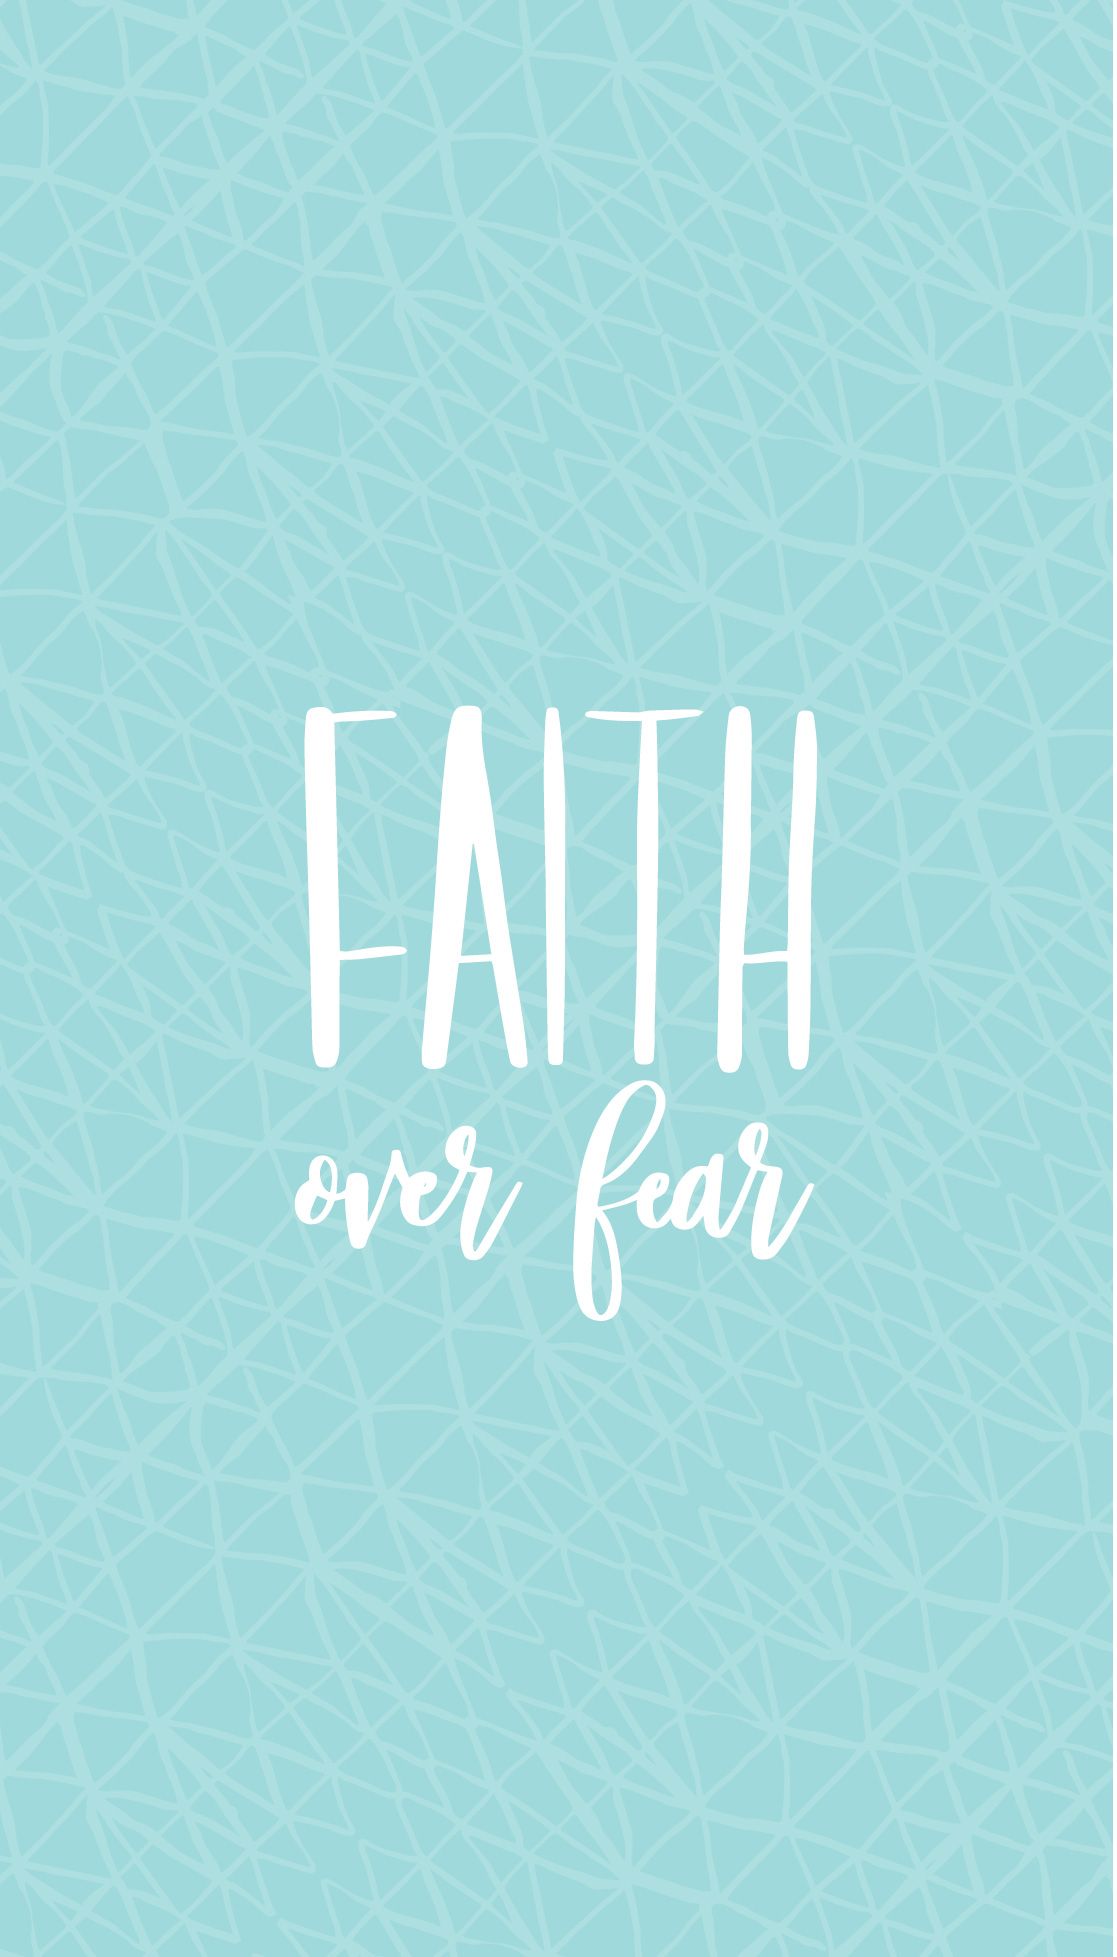 Faith Wallpapers